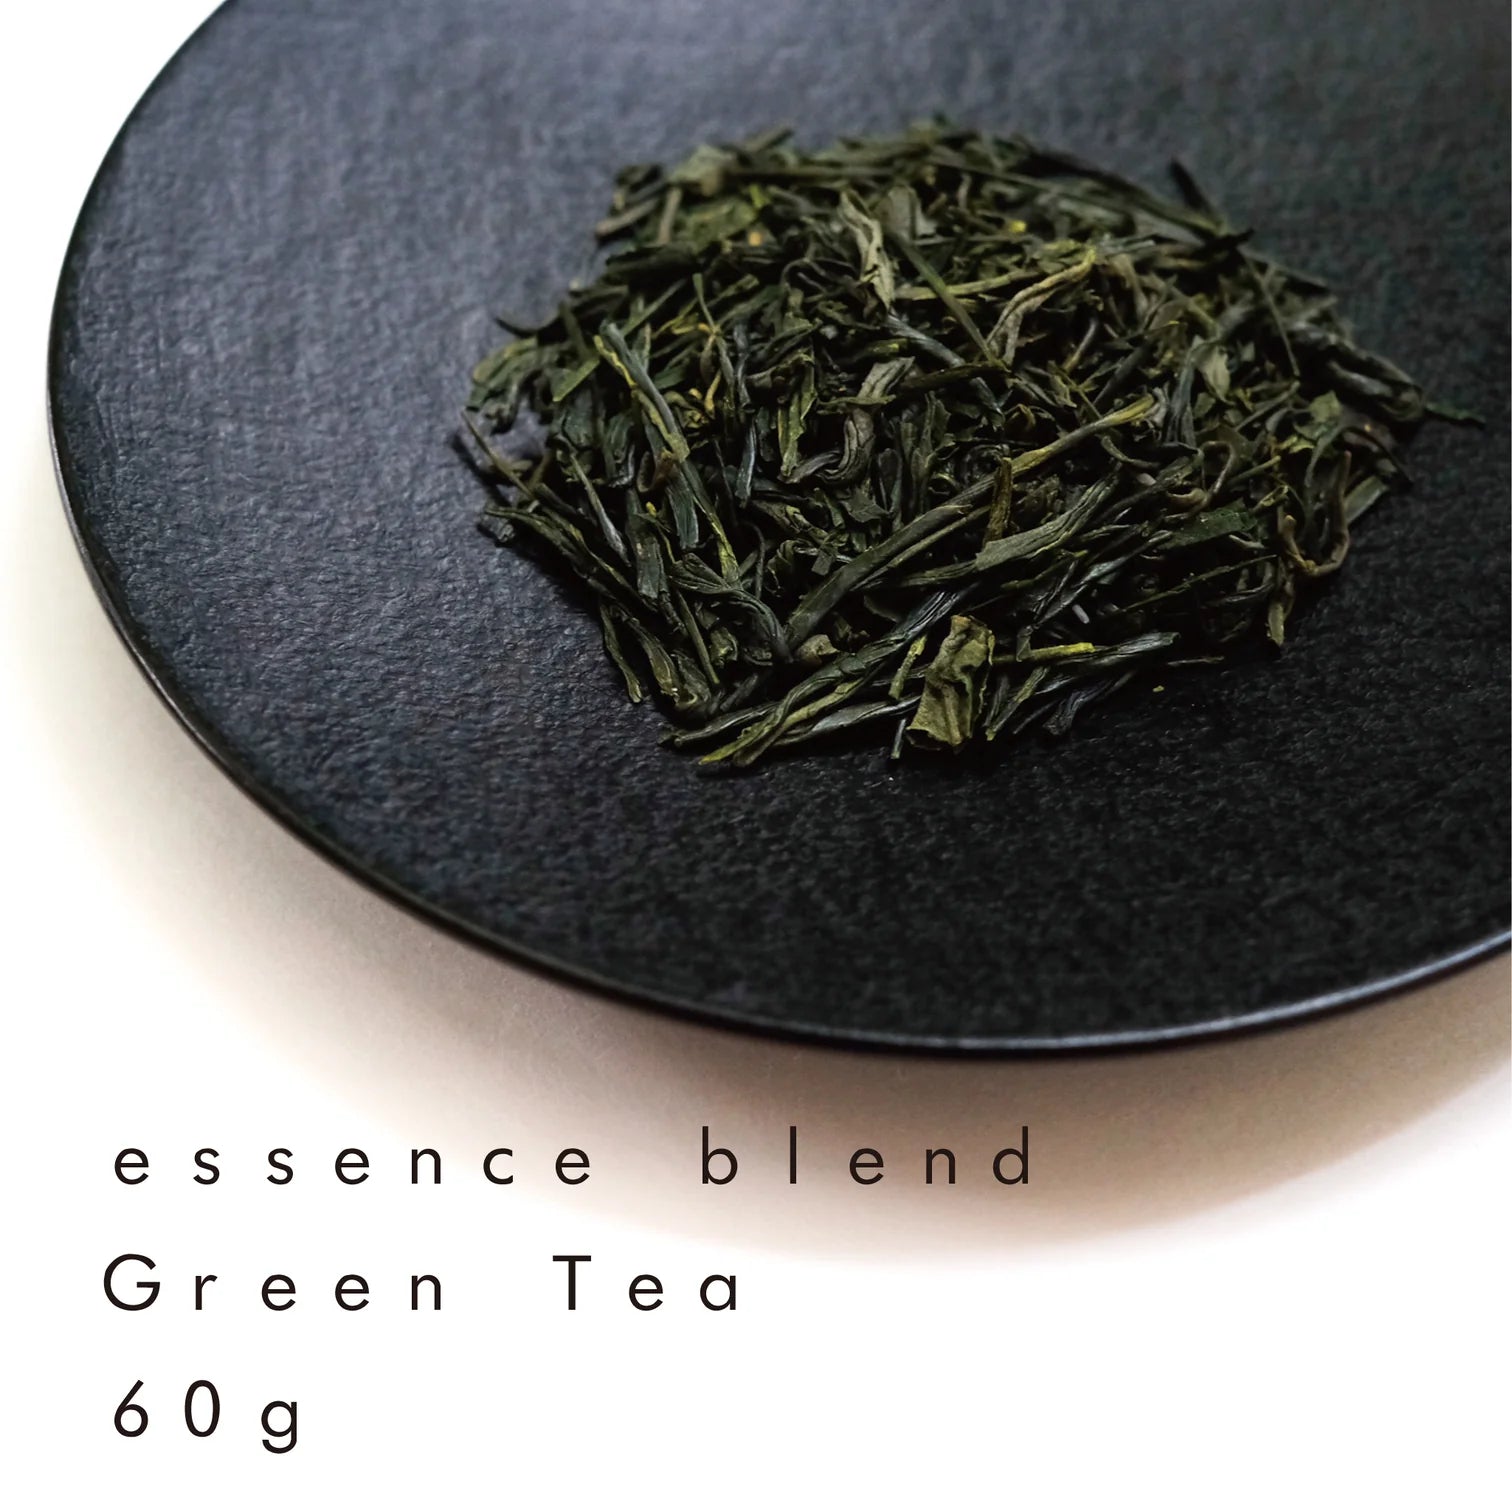 2缶ギフトセット (緑茶 エッセンスブレンド ＋ ほうじ茶 )  |  Gift set of 2 tea cans ( essence blend  Green Tea + Roasted Green Tea )